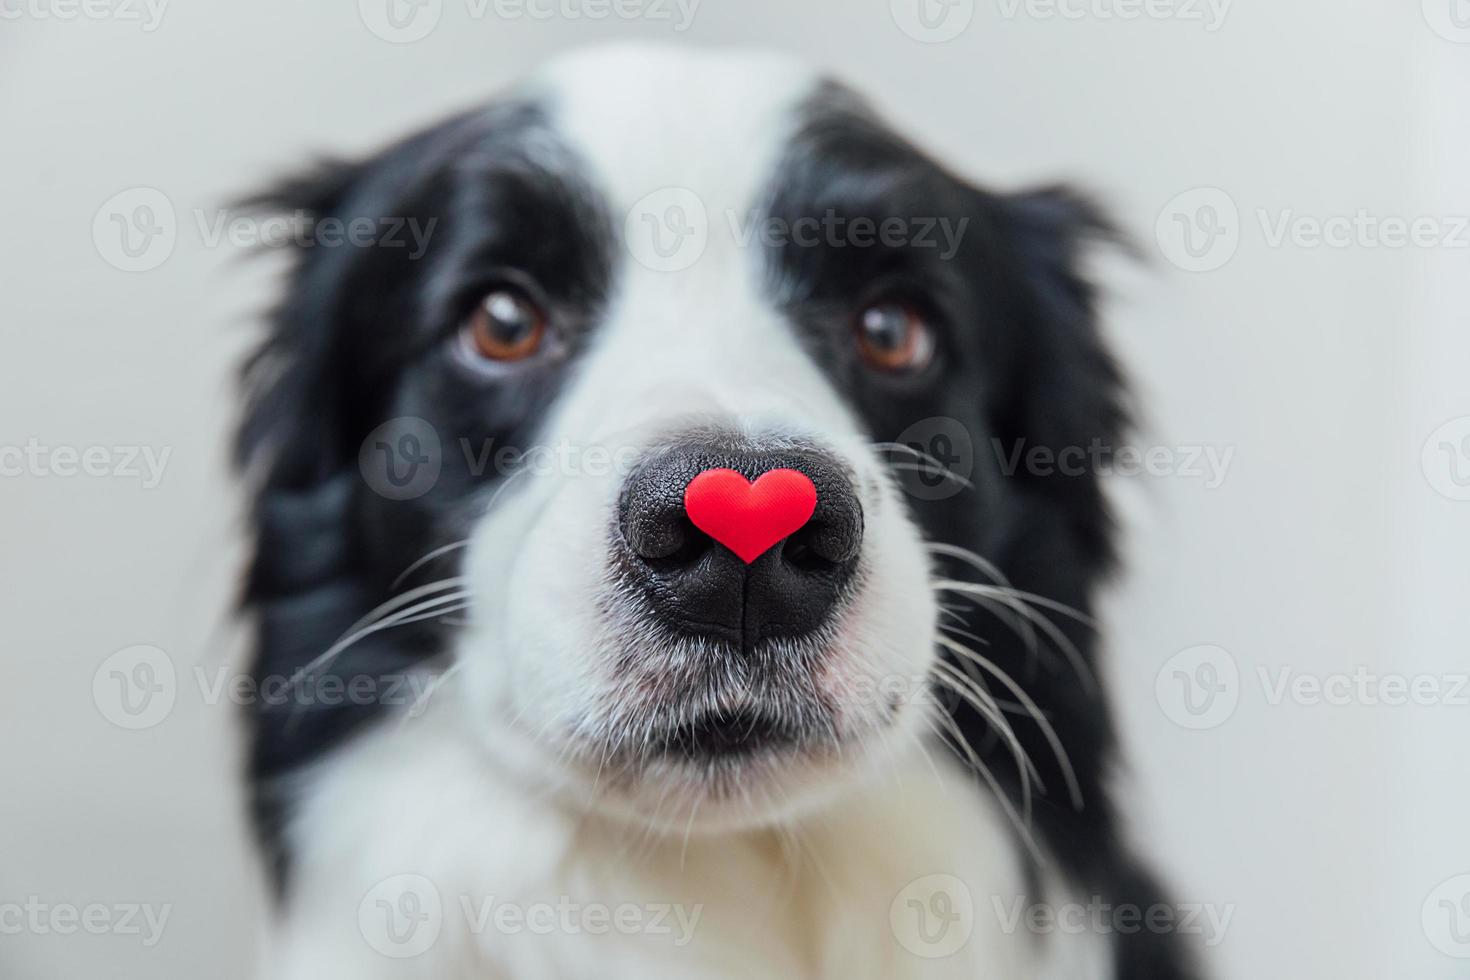 S t. concepto de día de san valentín. retrato divertido lindo cachorro border collie sosteniendo corazón rojo en la nariz aislado sobre fondo blanco. encantador perro enamorado en el día de san valentín da regalo. foto